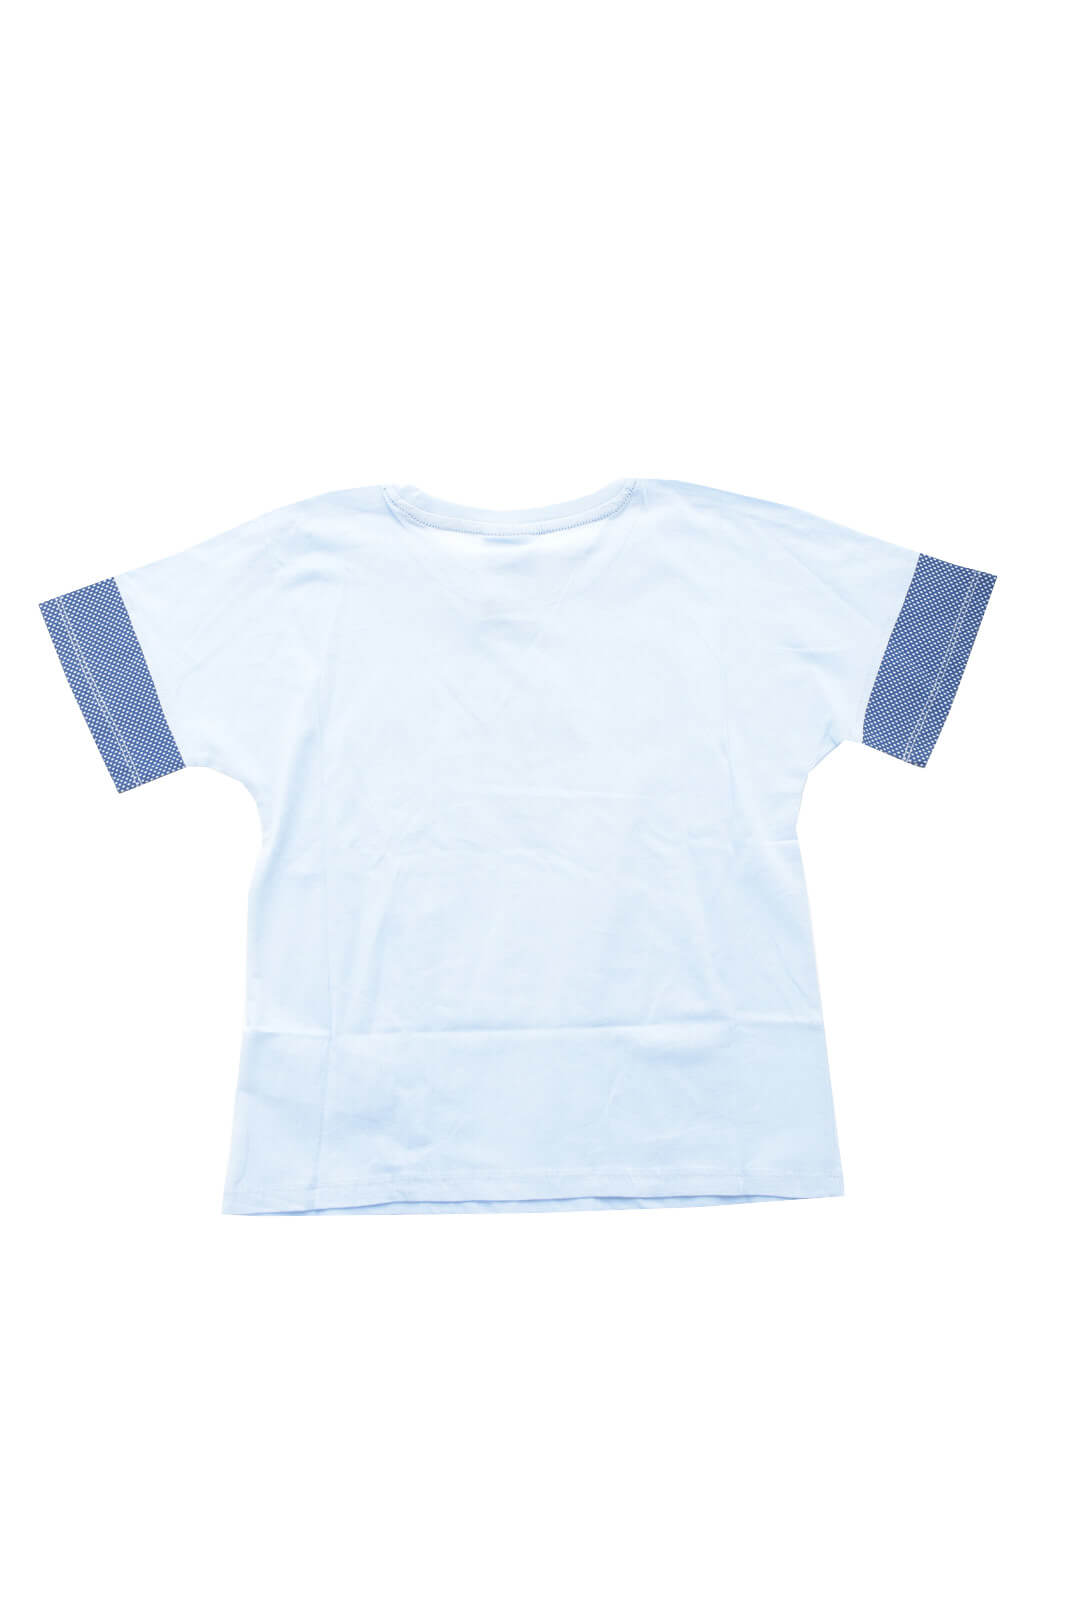 Diadora T Shirt bambina